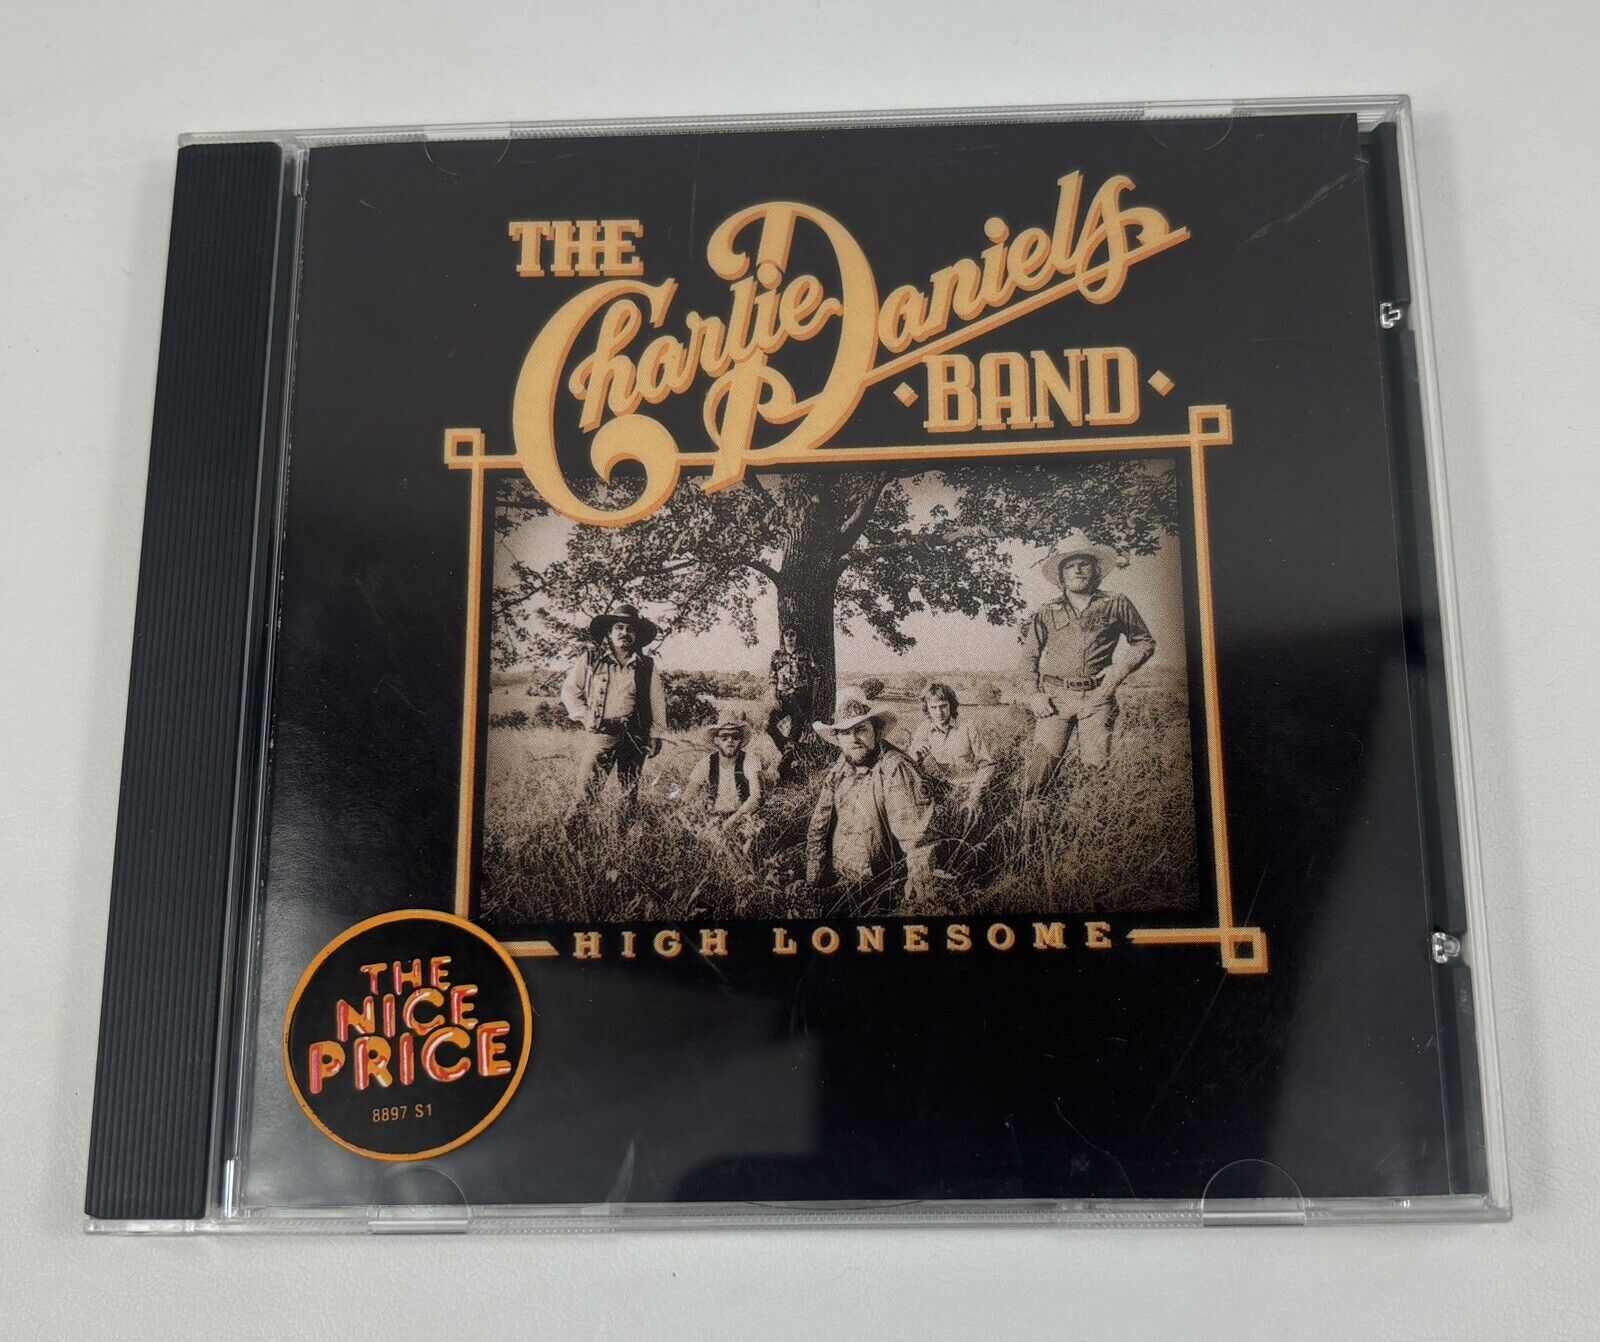 The Charlie Daniels Band - High Lonesome - Epic USA EK 34377 (CD, 1976)